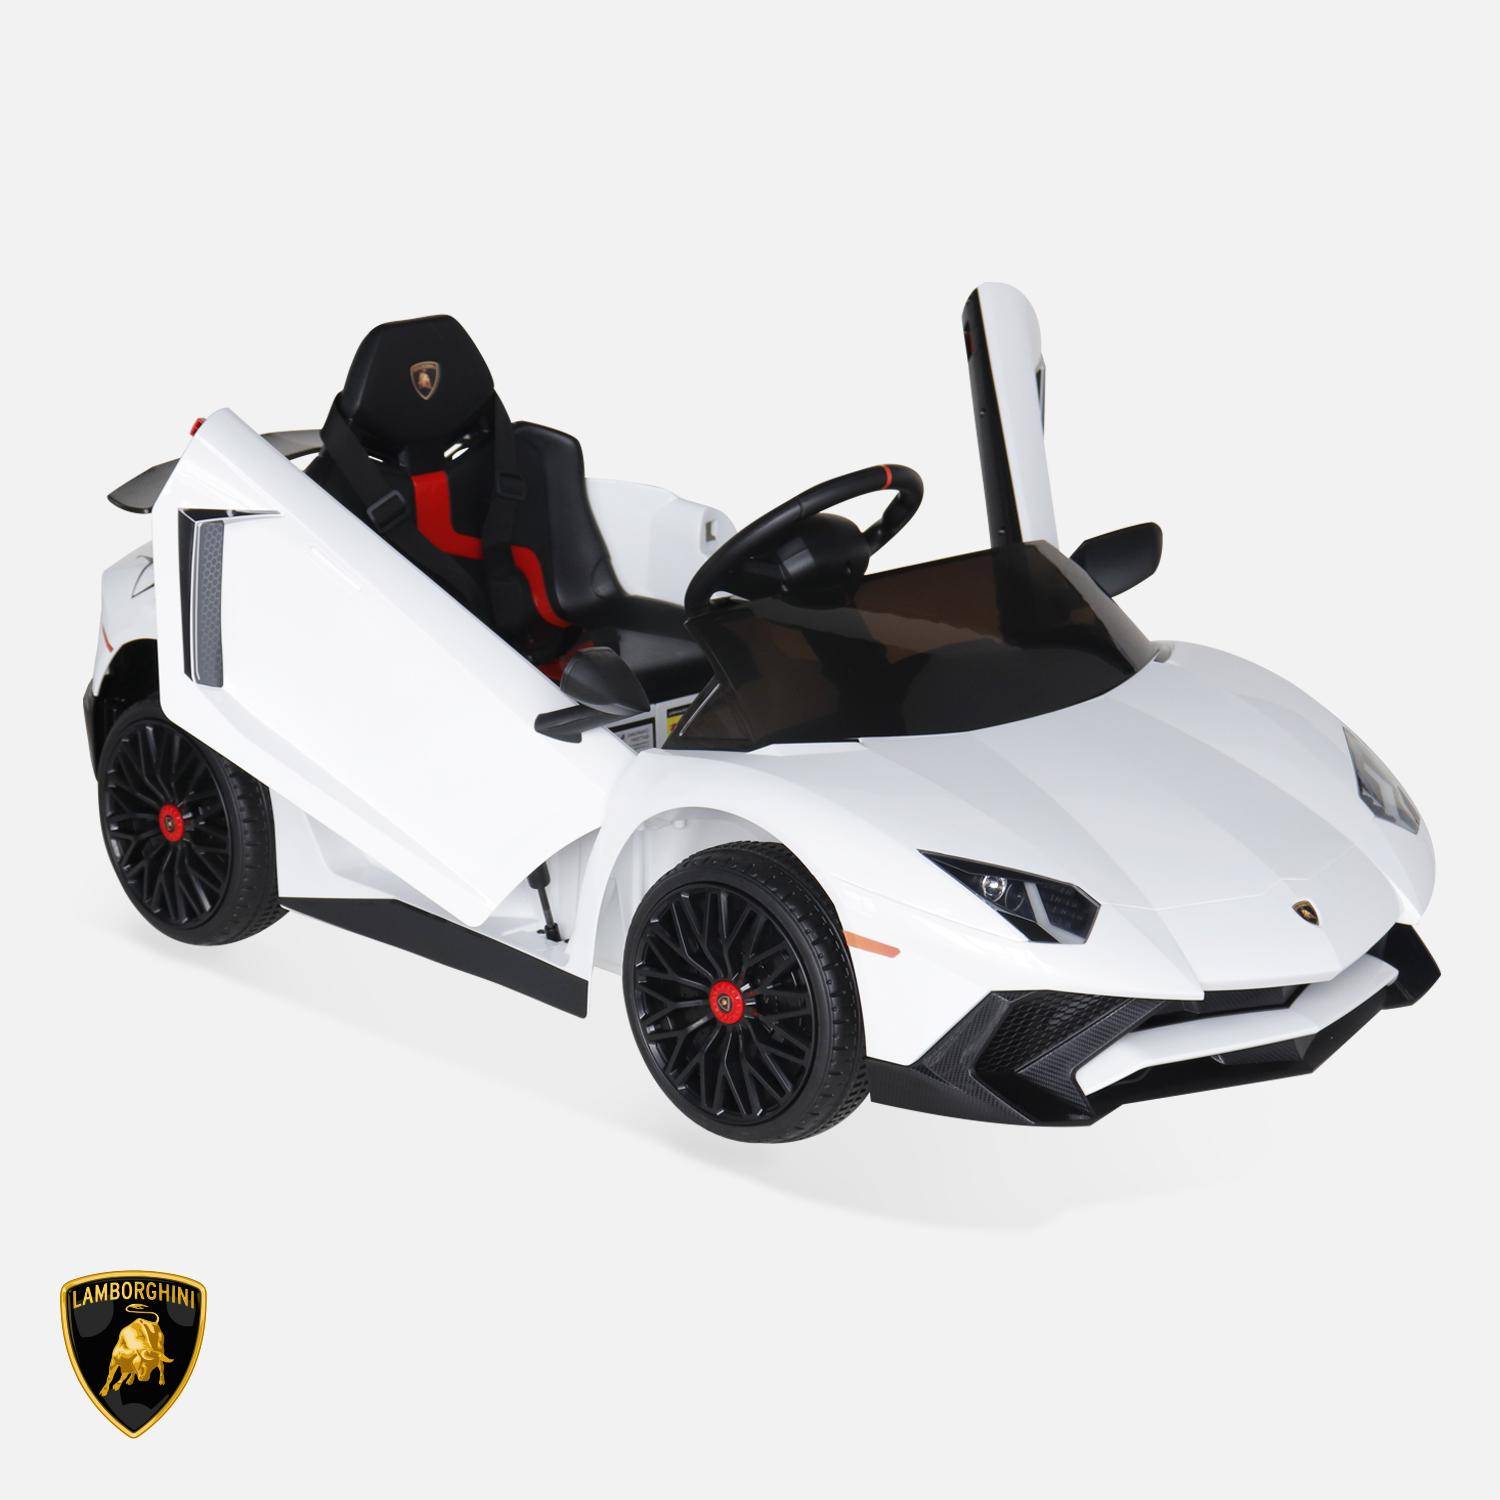 12V Lamborghini elektrische kinderauto, wit, 1 zitplaats, met autoradio, afstandsbediening, MP3, USB-poort en koplampen. Snelle levering, 2 jaar garantie. Photo3